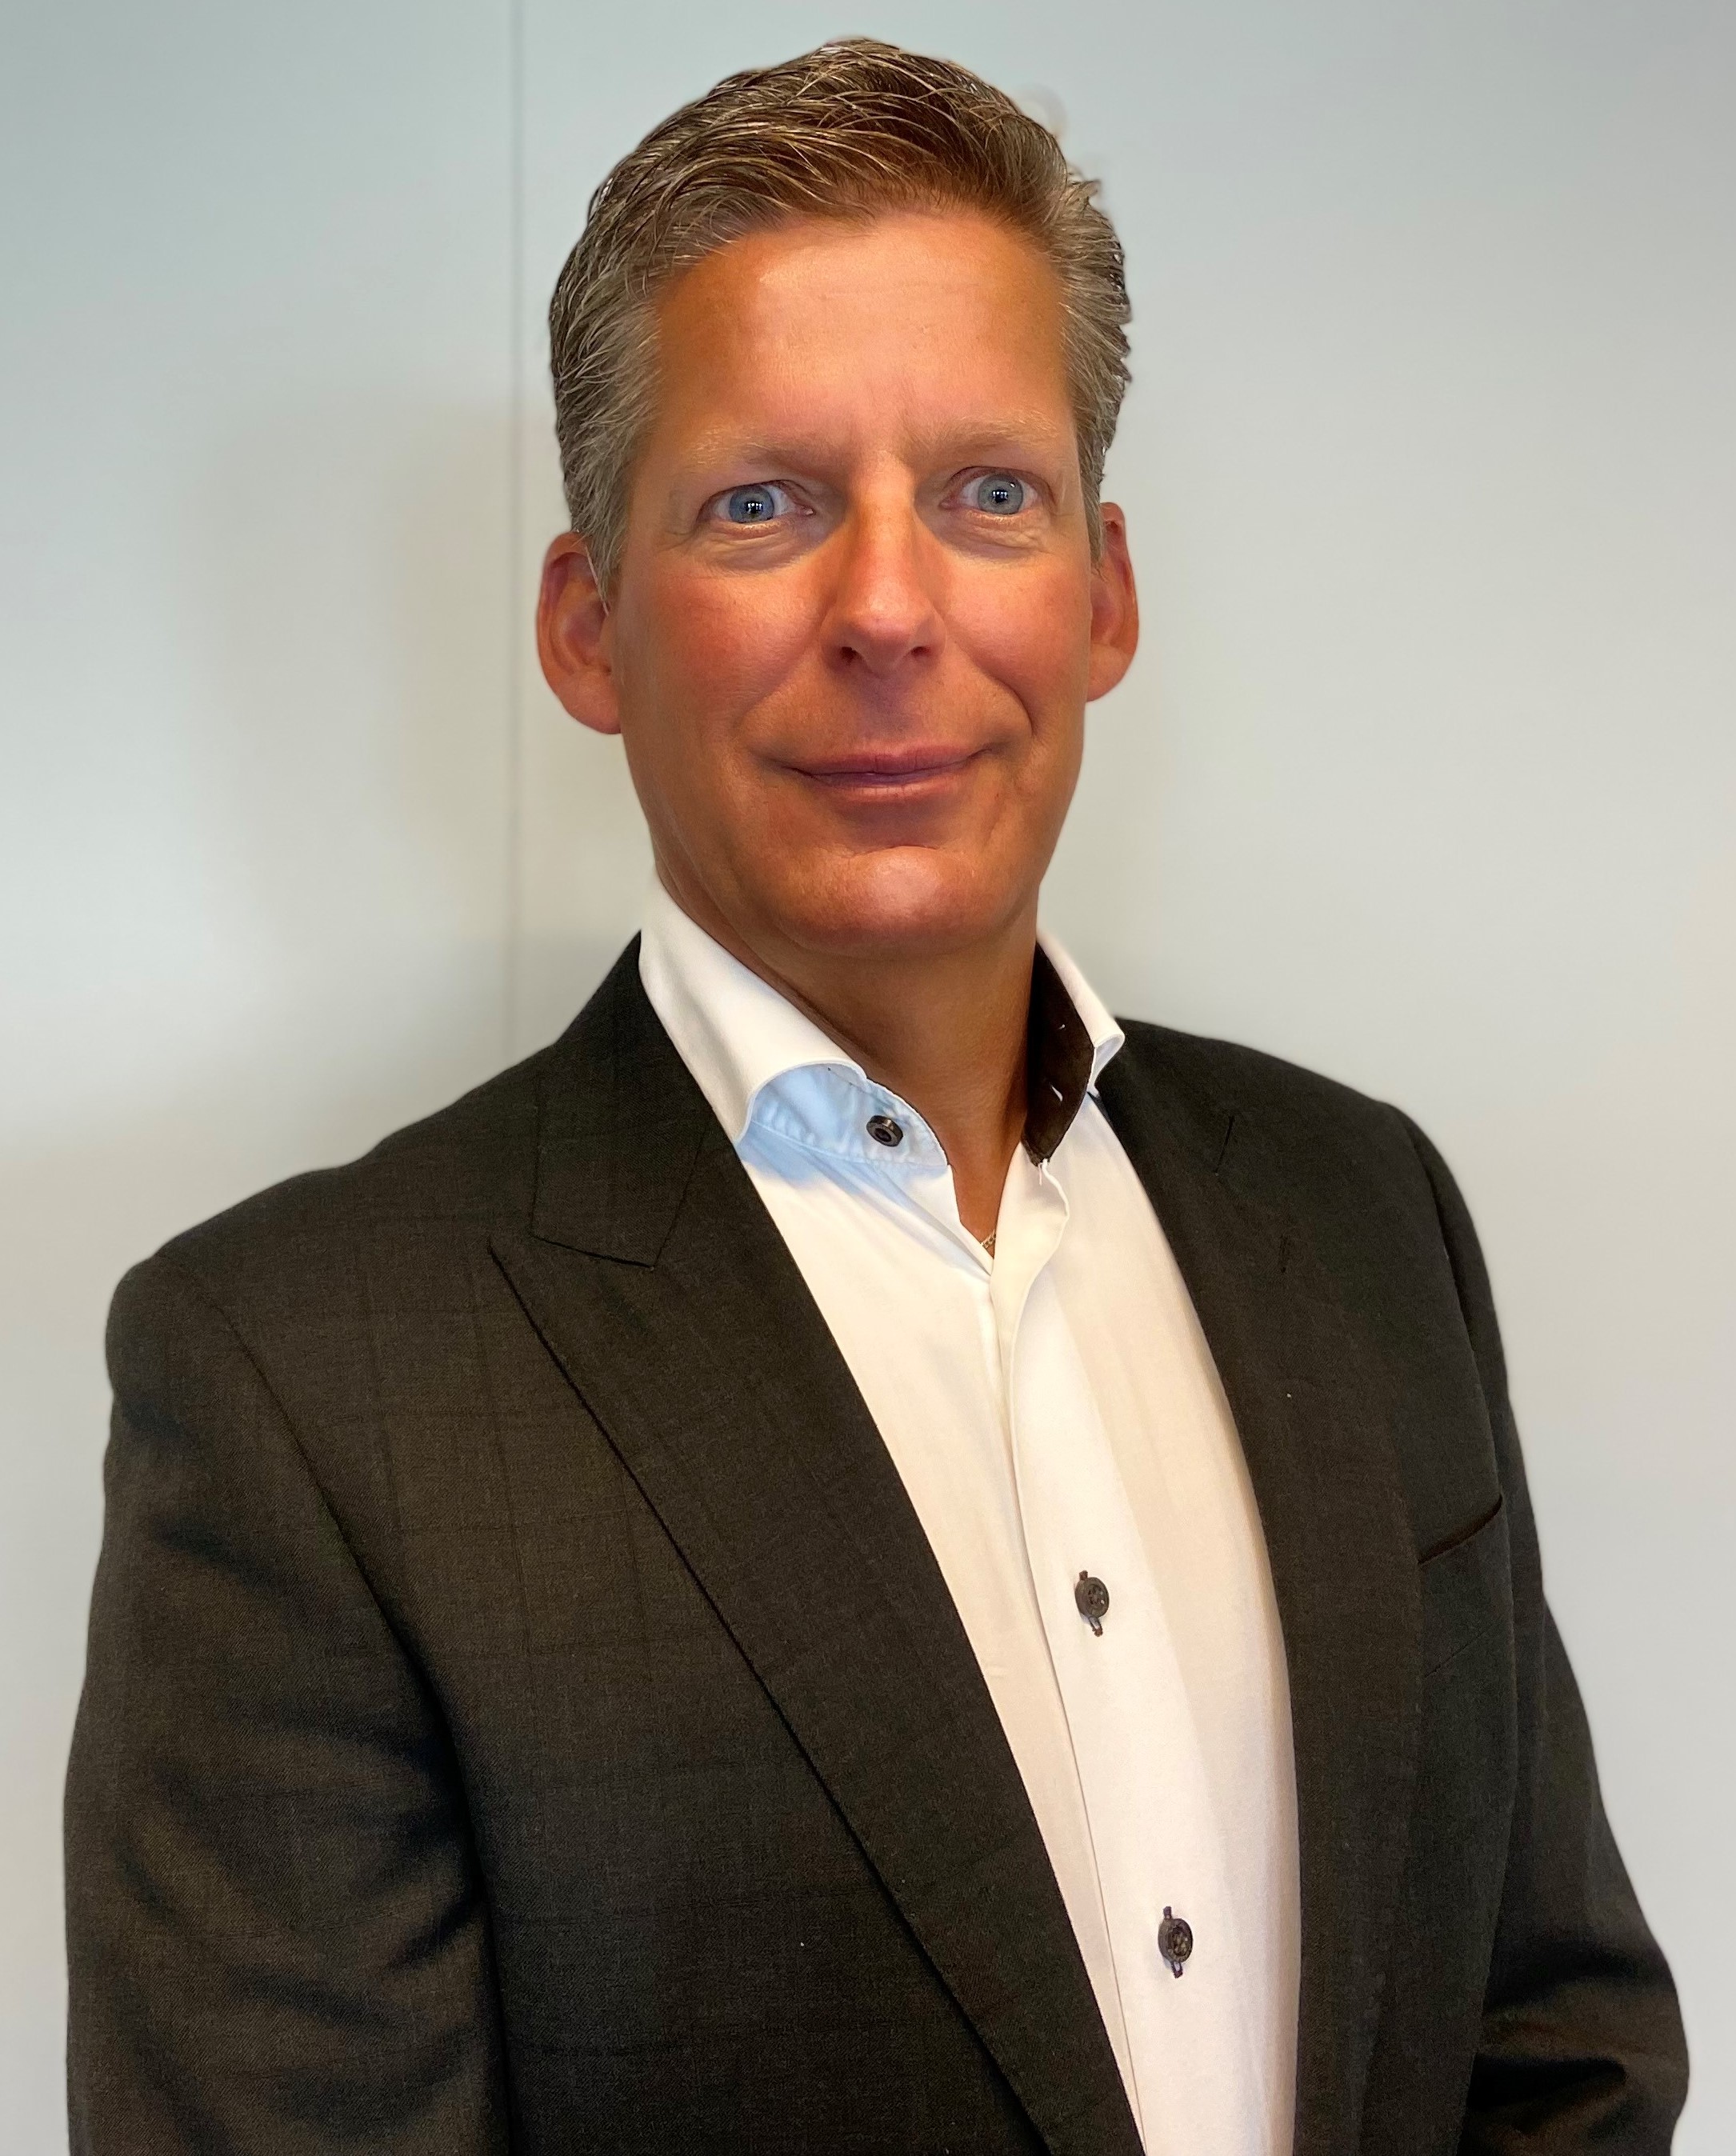 Bram Nijp aangesteld als Managing Director van GE Healthcare Nederland